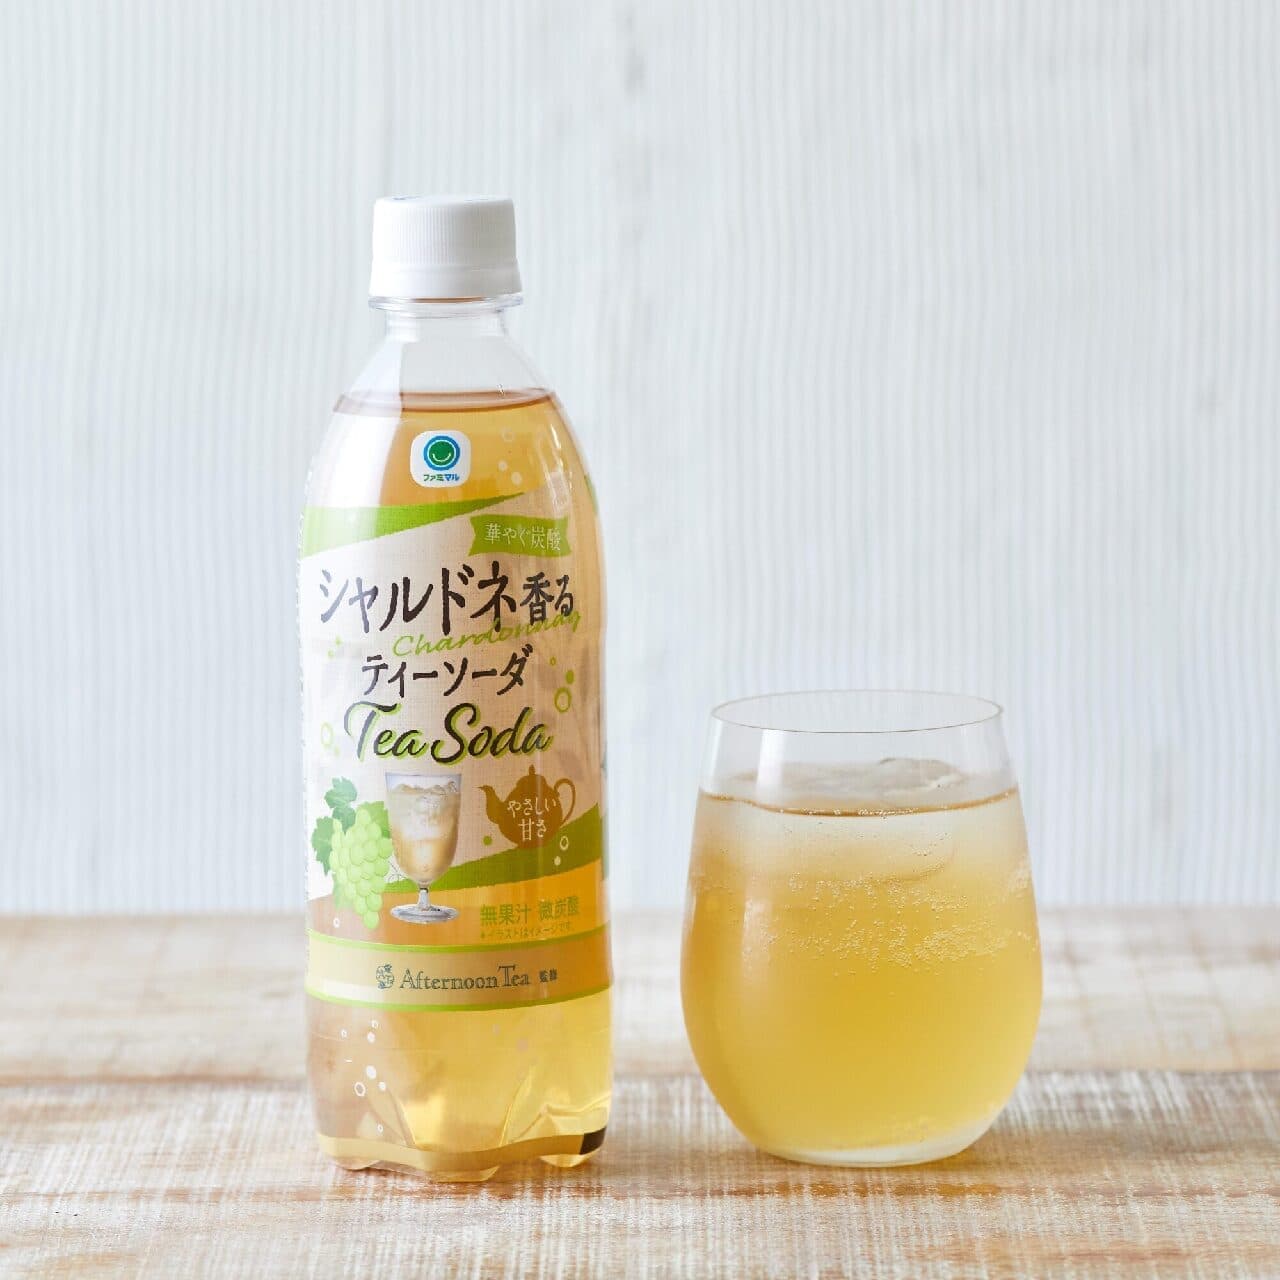 FamilyMart "Famimaru Afternoon Tea supervised Chardonnay-scented Tea Soda".